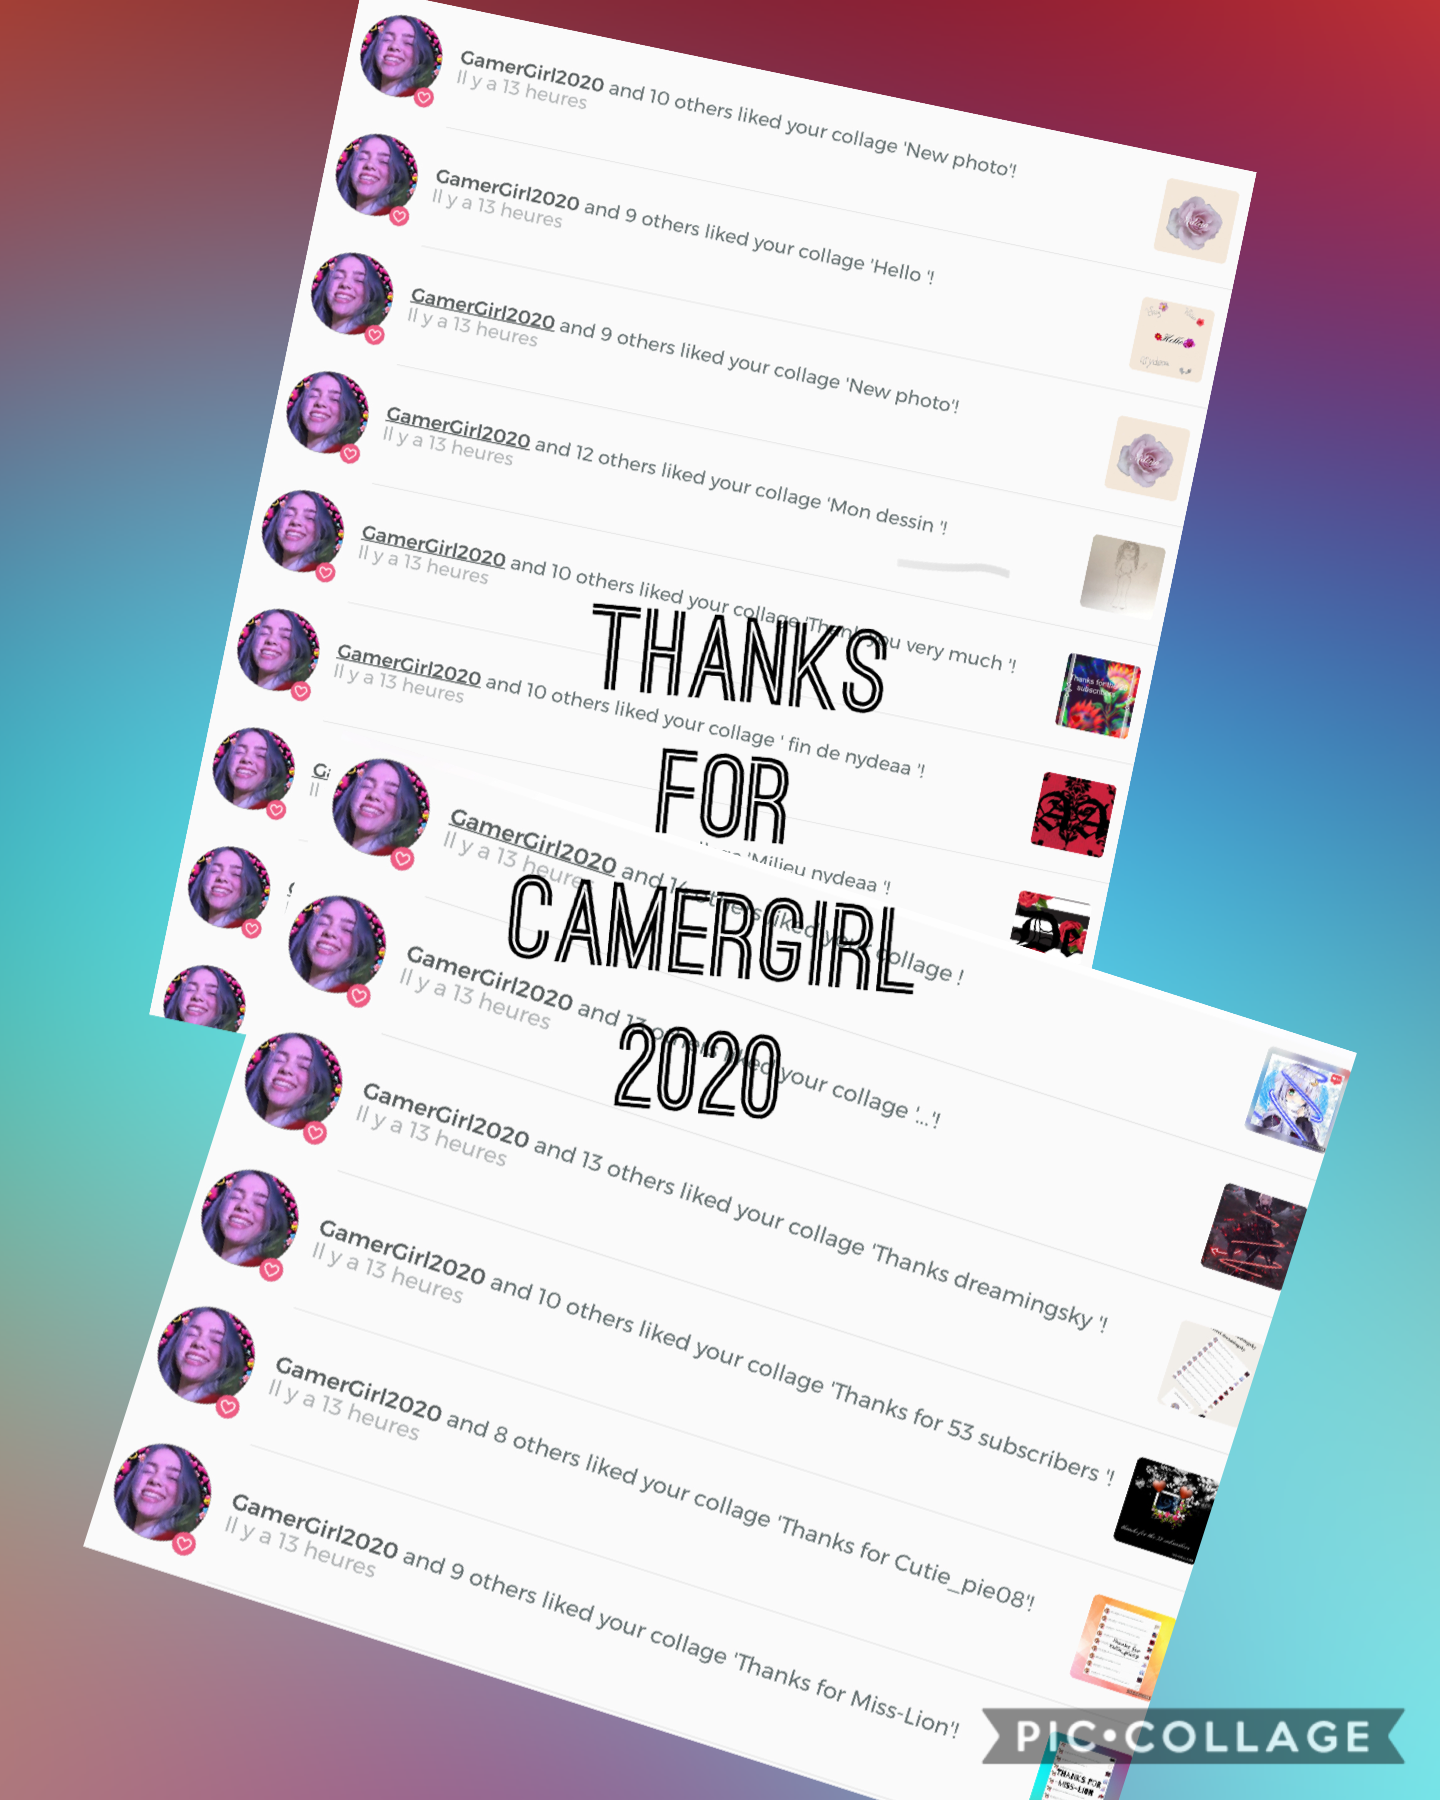 Thanks for CamerGirl2020